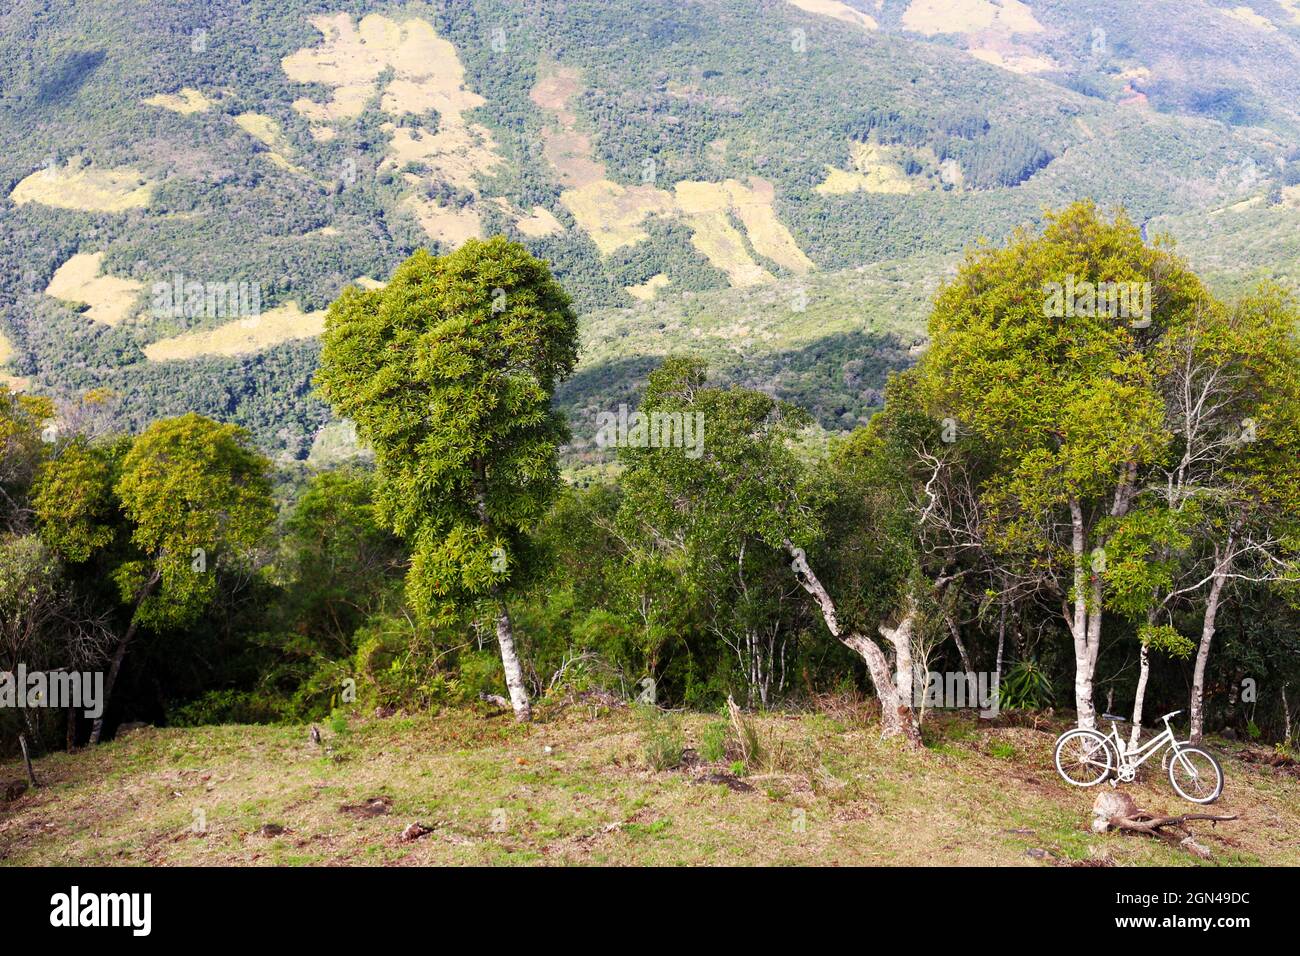 Un vélo s'inclinant contre l'un des premiers arbres de la forêt Atlantica, qui commence dans la vallée. Banque D'Images